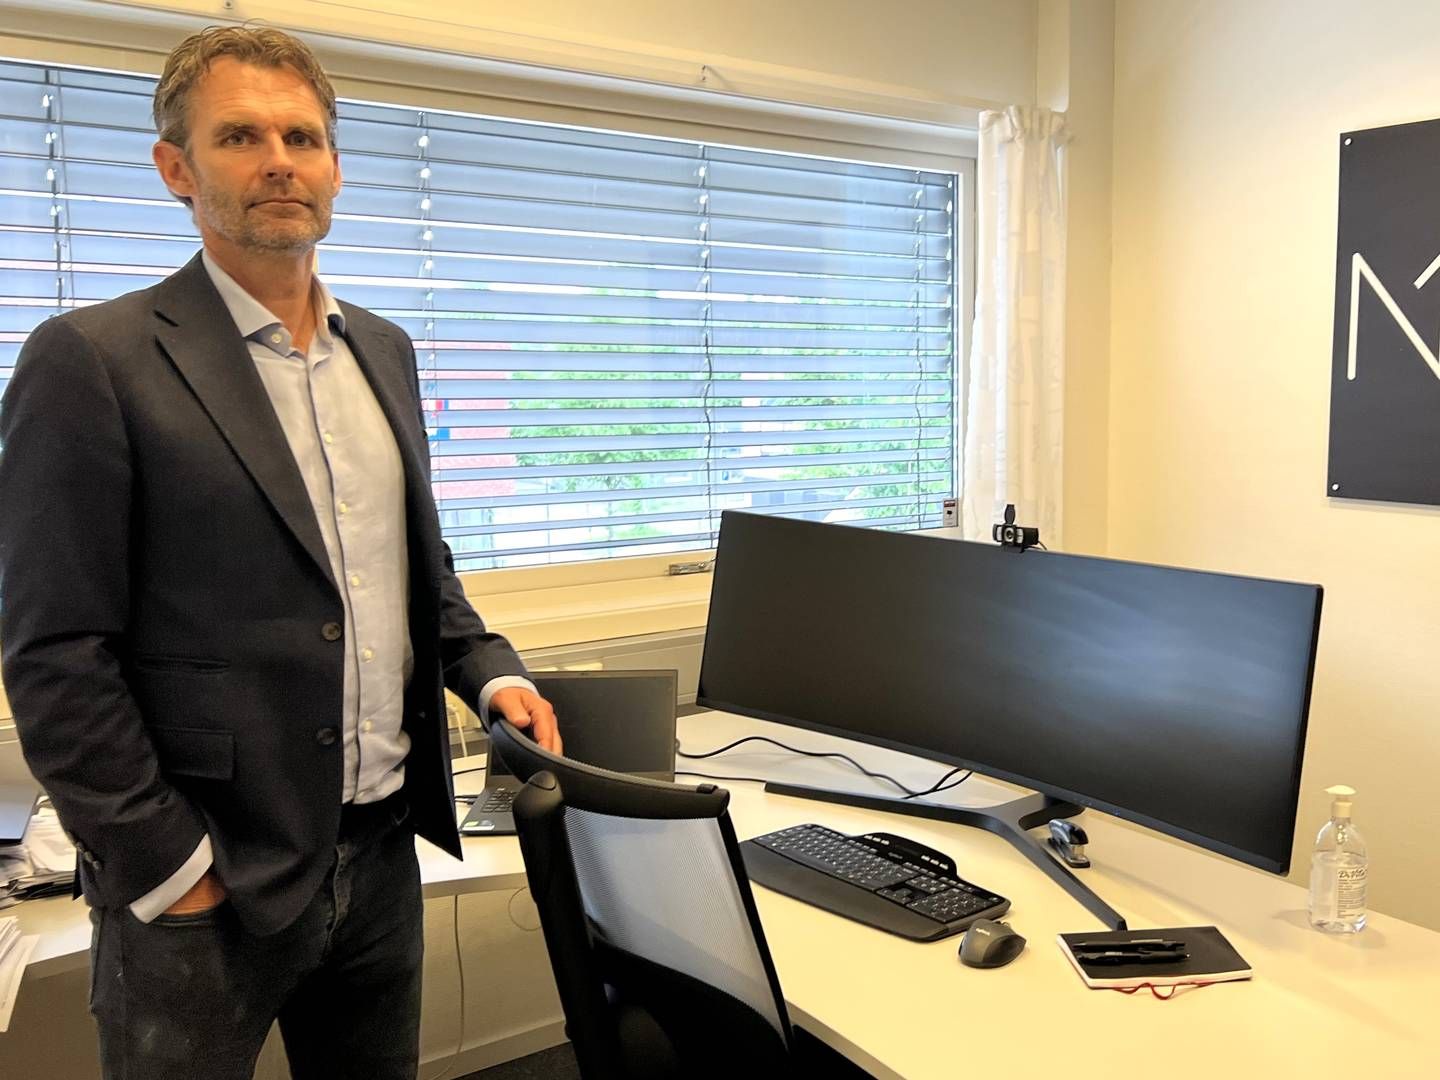 RASK FORFREMMELSE: Johan Linn ble i januar ansatt som administrerende direktør i Næringsbanken. Linn kom da fra stillingen som kredittsjef i samme bank, en stilling han startet opp i fire måneder tidligere. | Foto: Gaute Freng / Ringsaker Blad